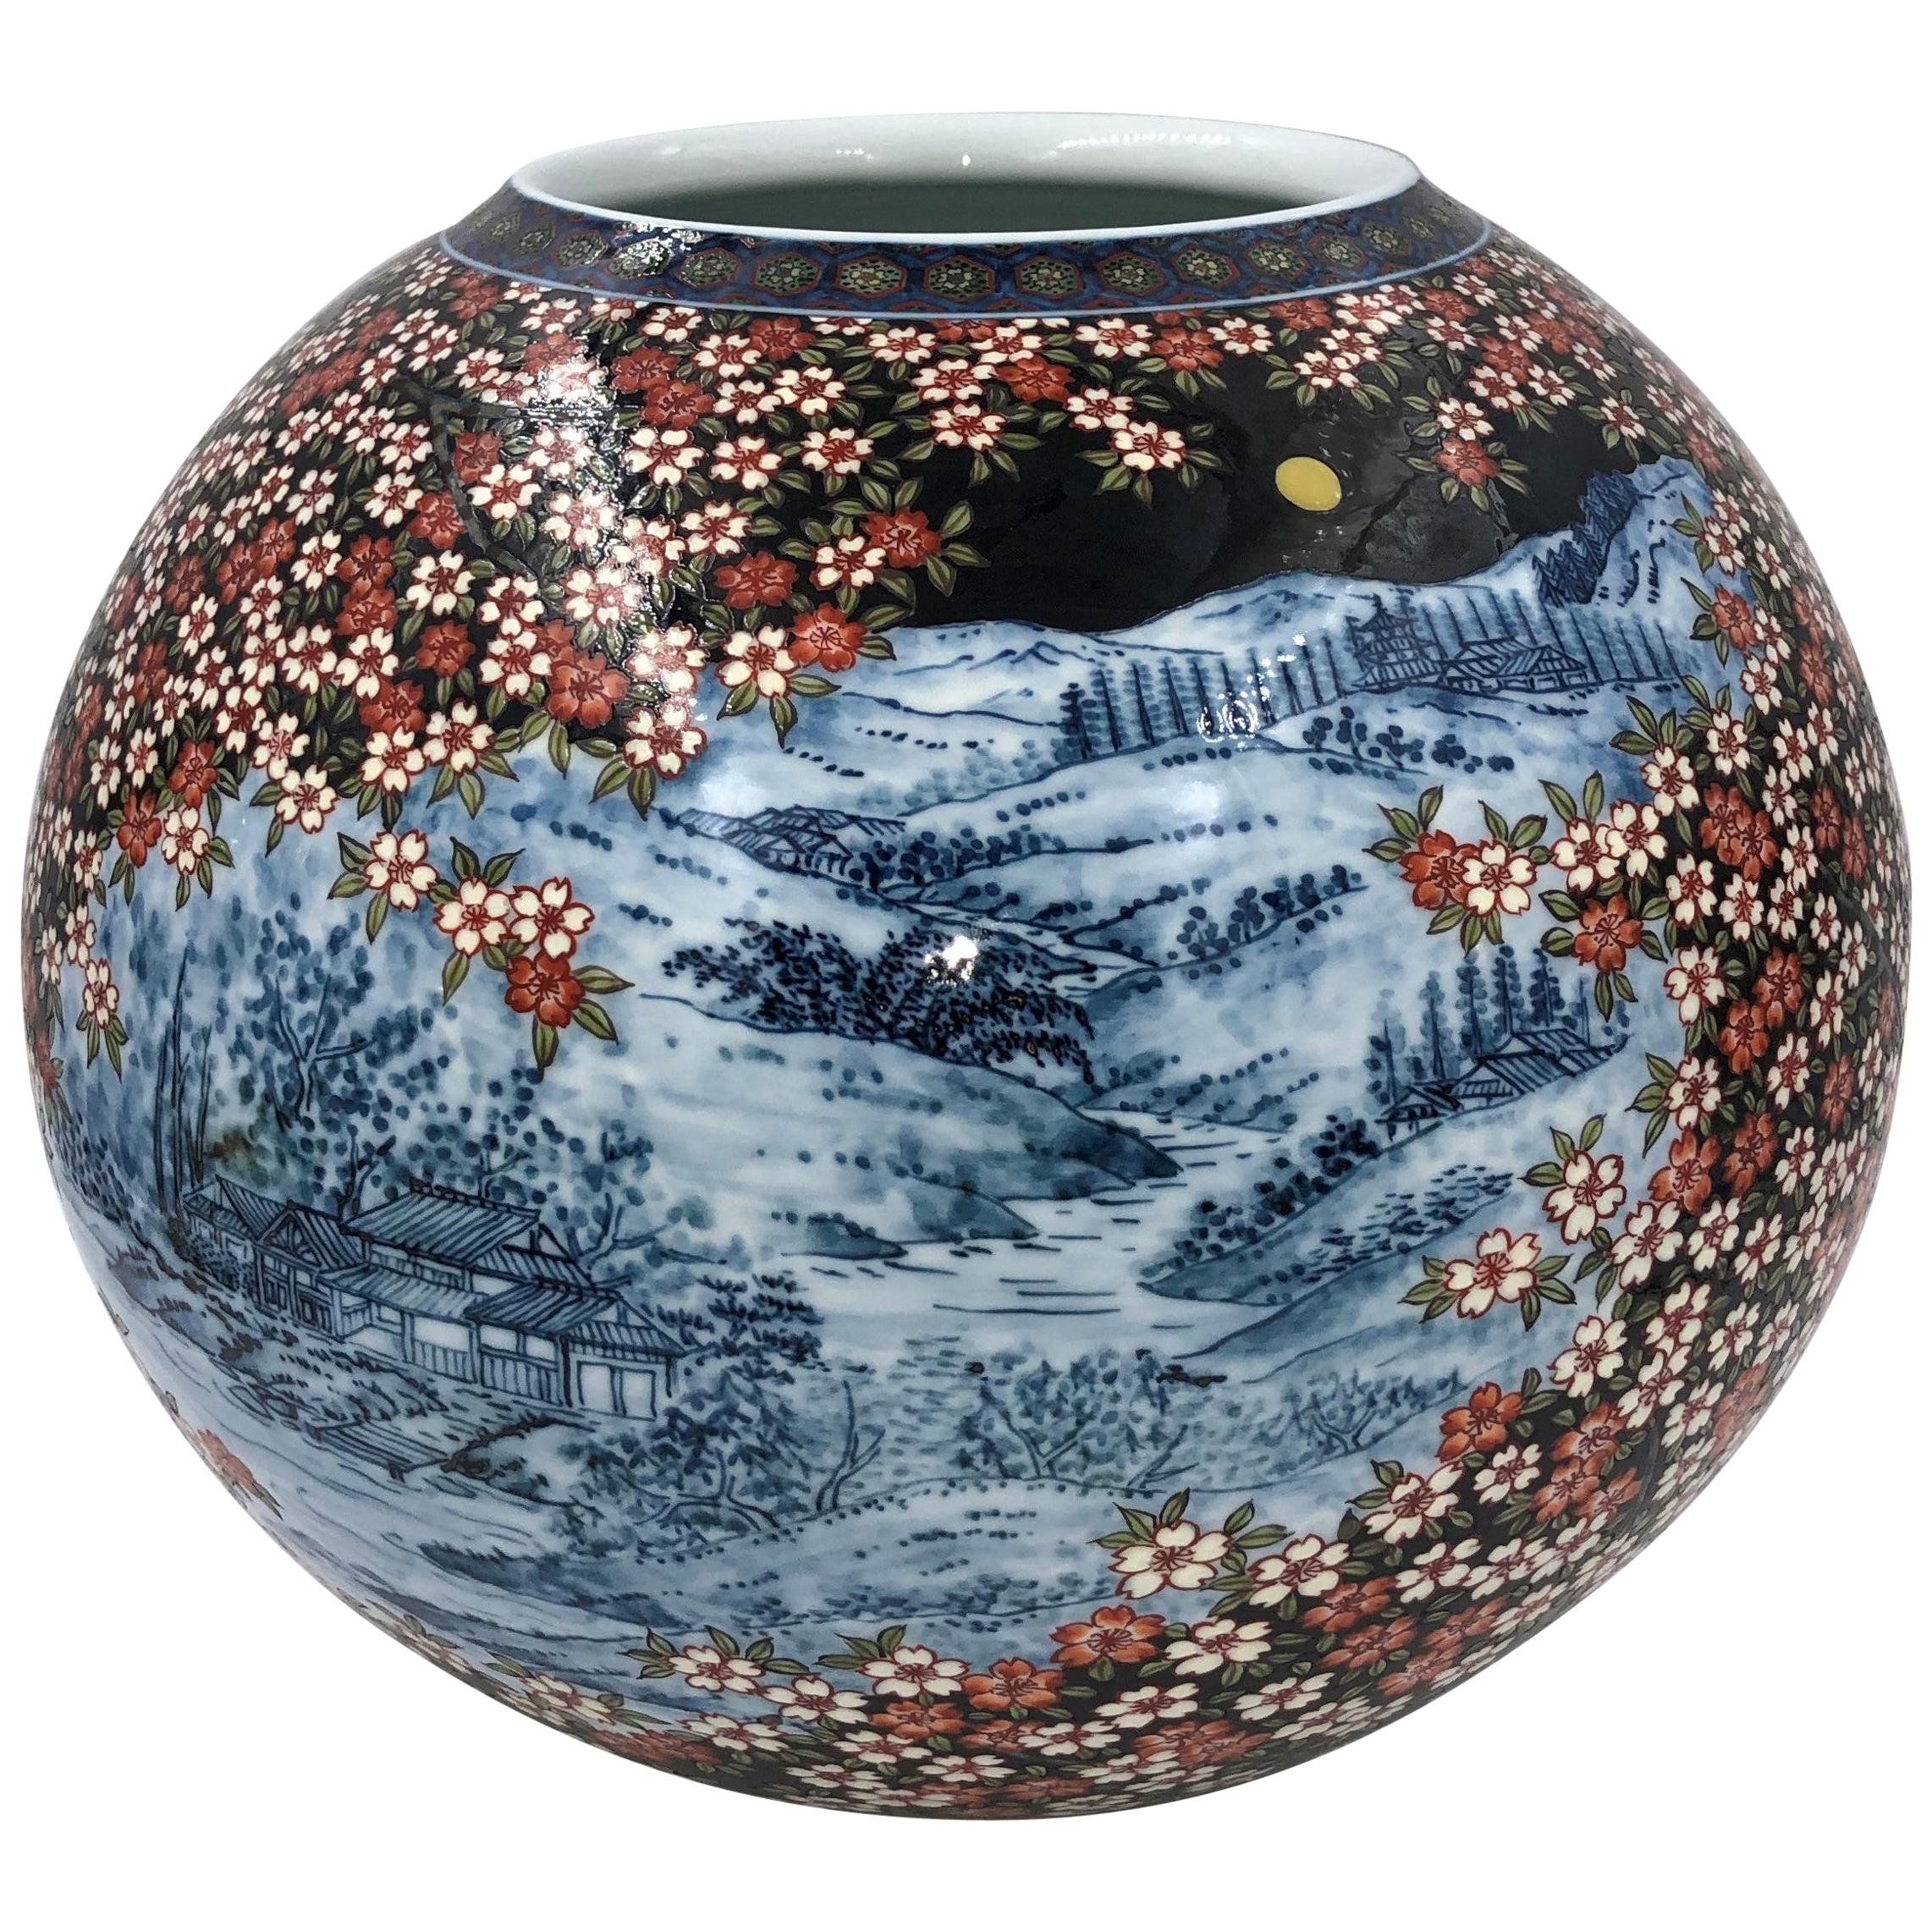 Vase contemporain japonais en porcelaine noire, bleue et rouge, réalisé par un maître artiste, 2